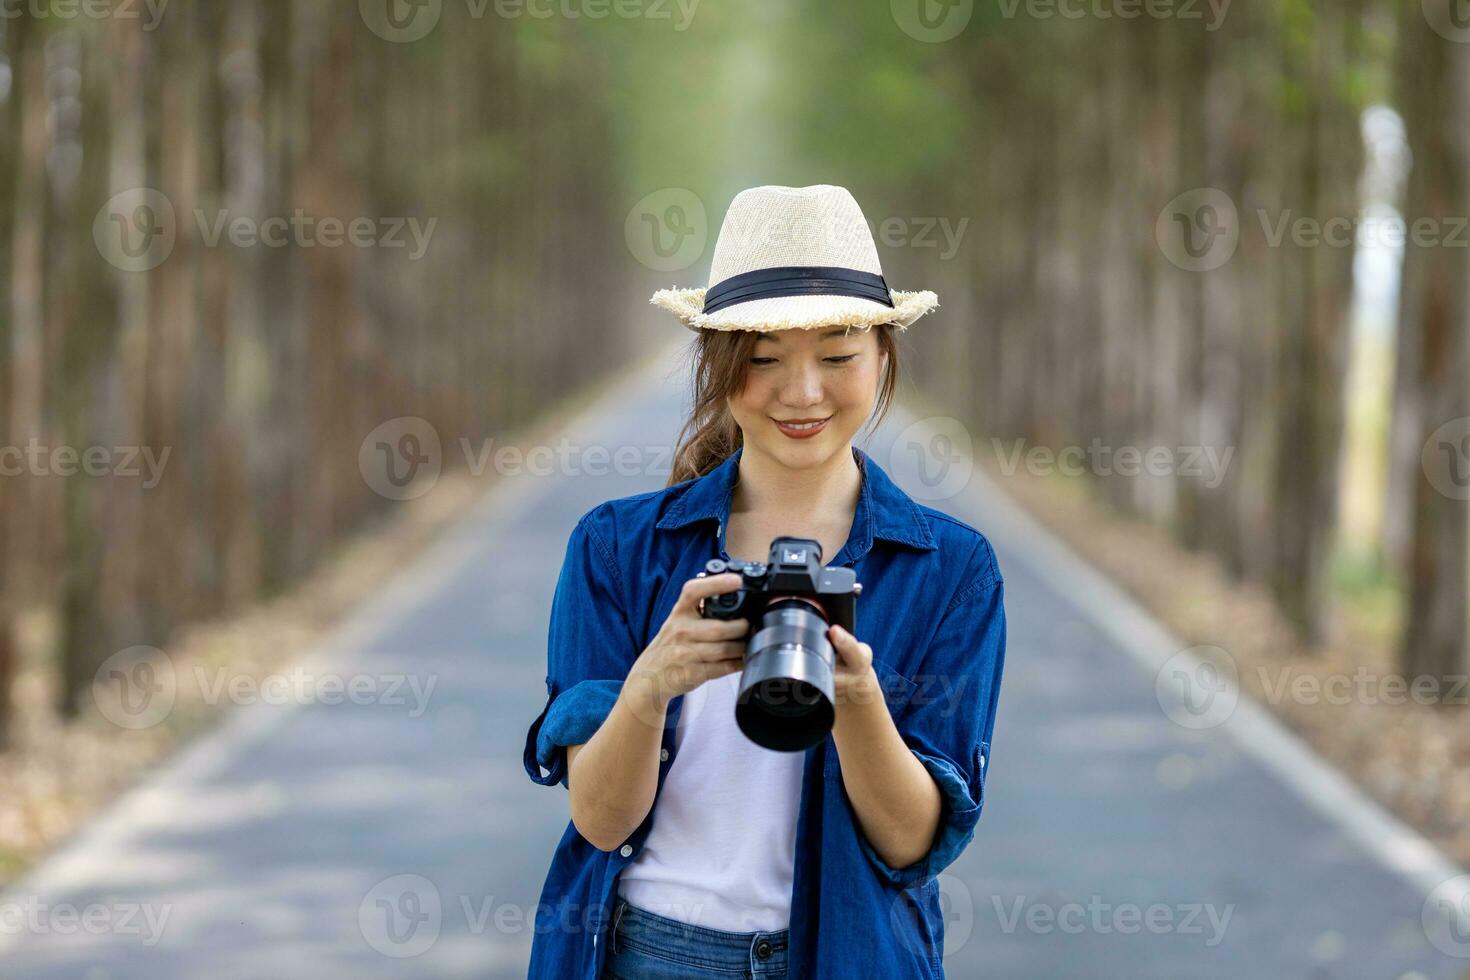 asiatico turista donna è assunzione foto utilizzando professionale telecamera mentre avendo vacanza a il nazionale parco mentre a piedi su il strada con colonna di albero per viaggio e fotografia concetto